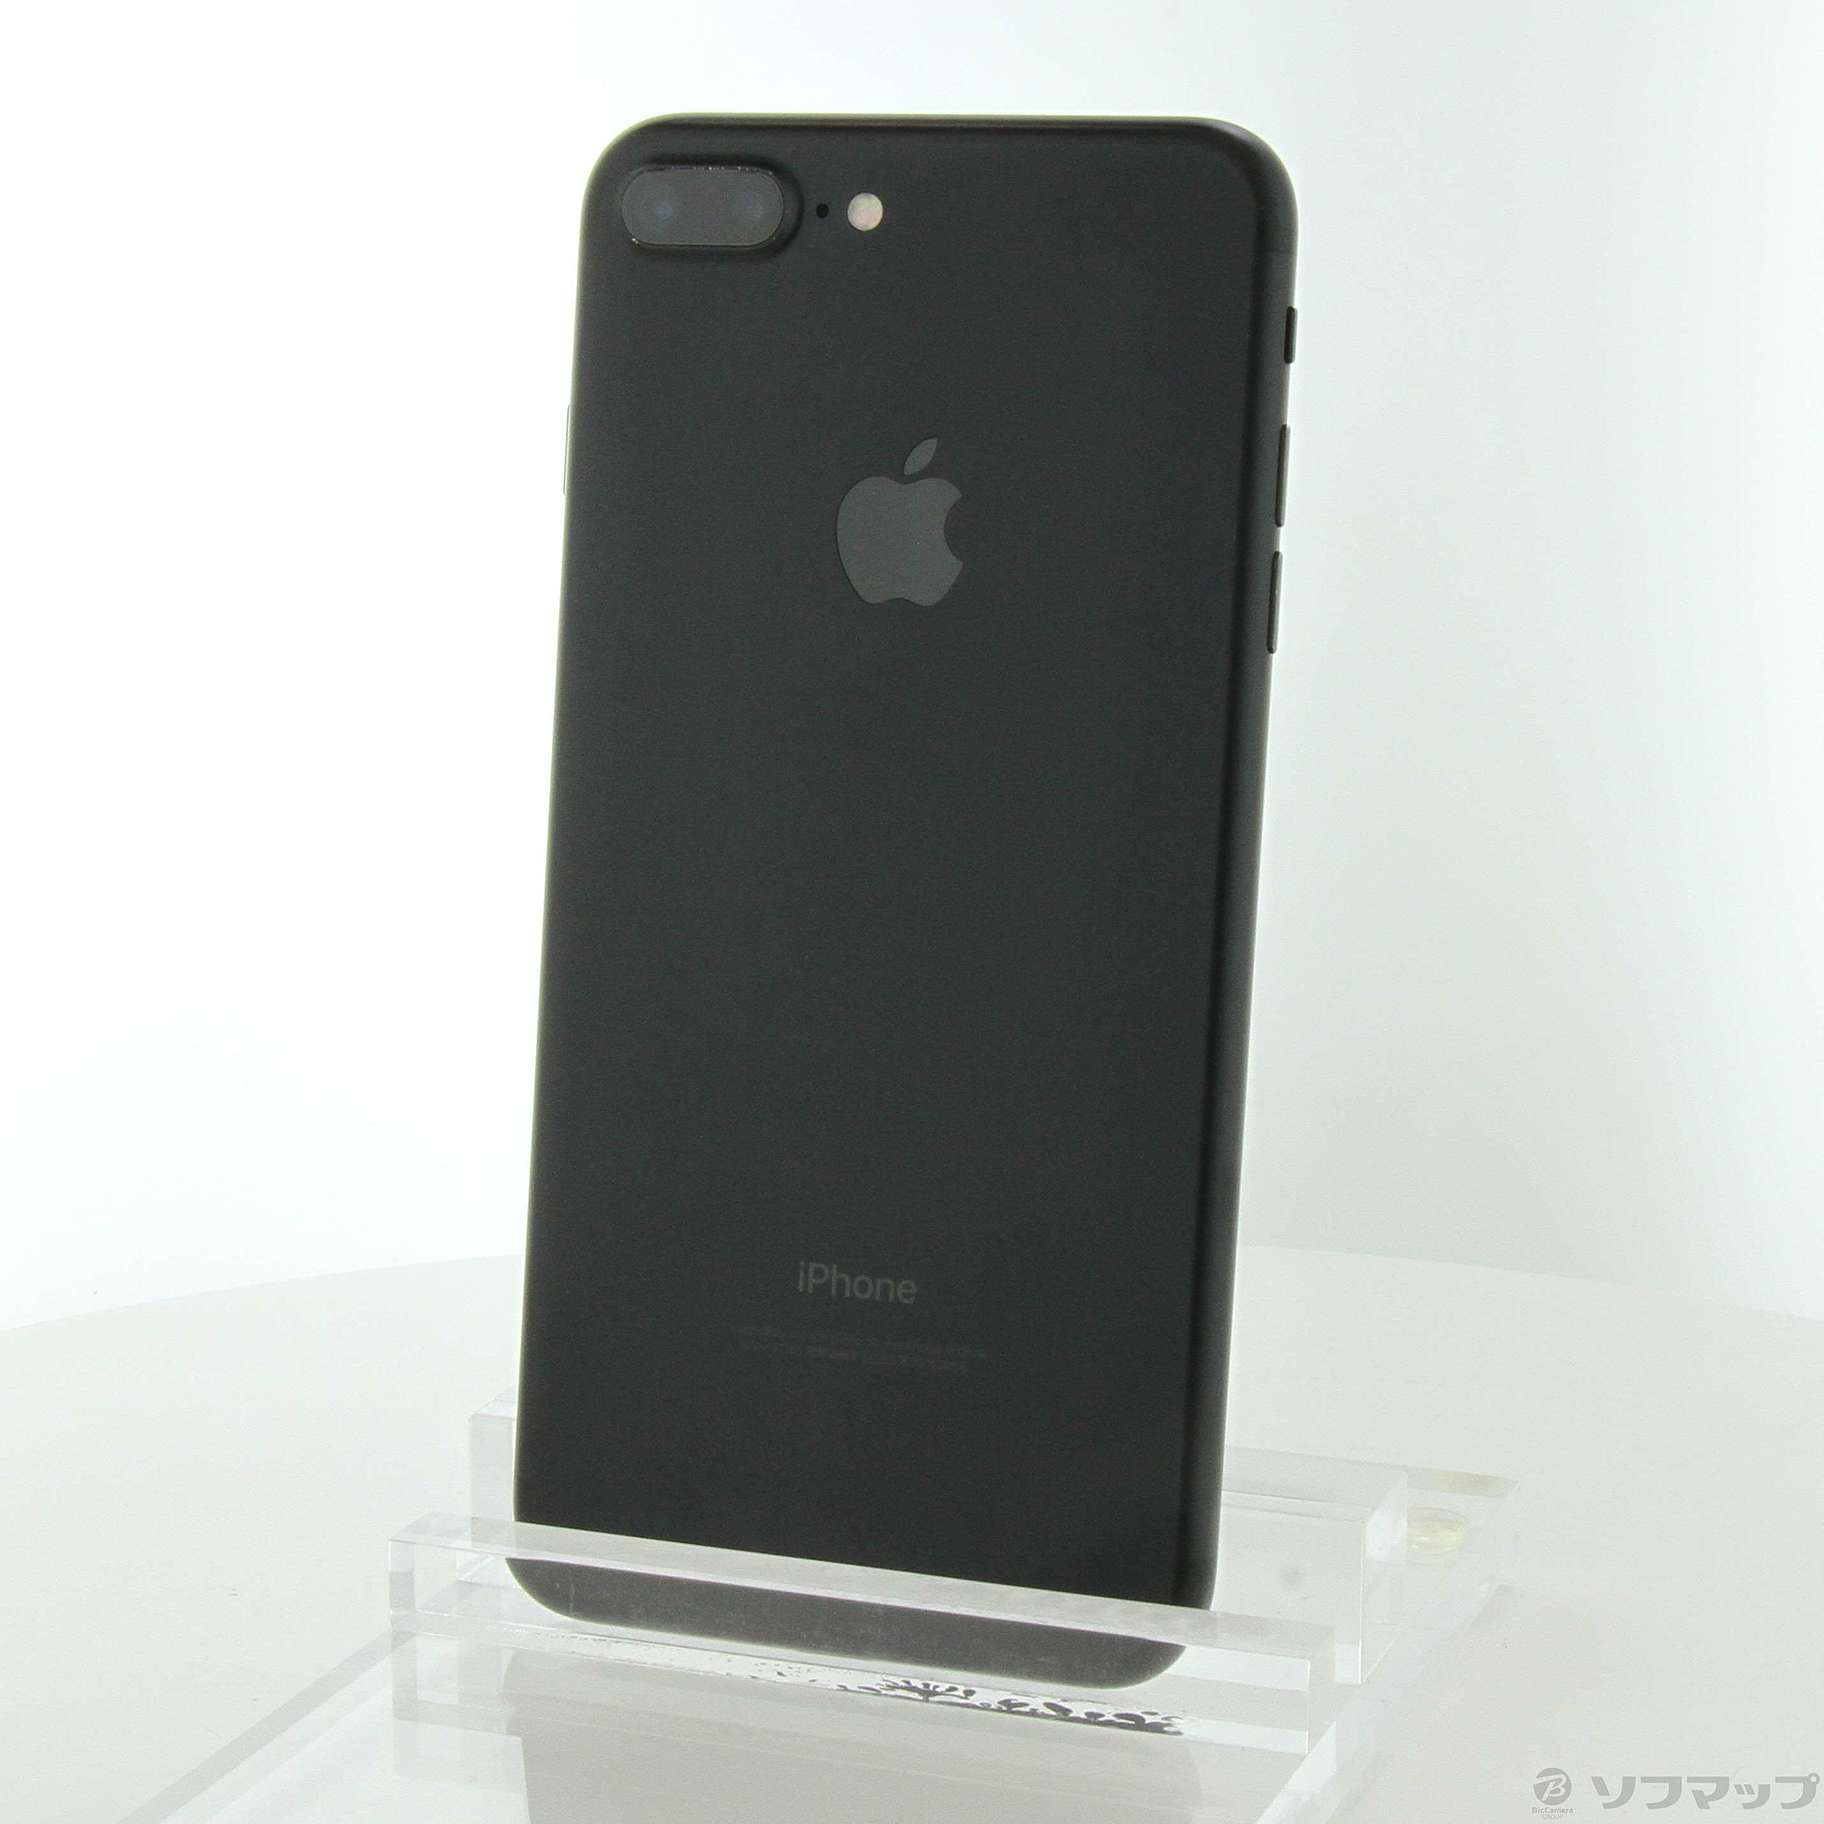 iPhone7 ブラック 128GB - スマートフォン本体